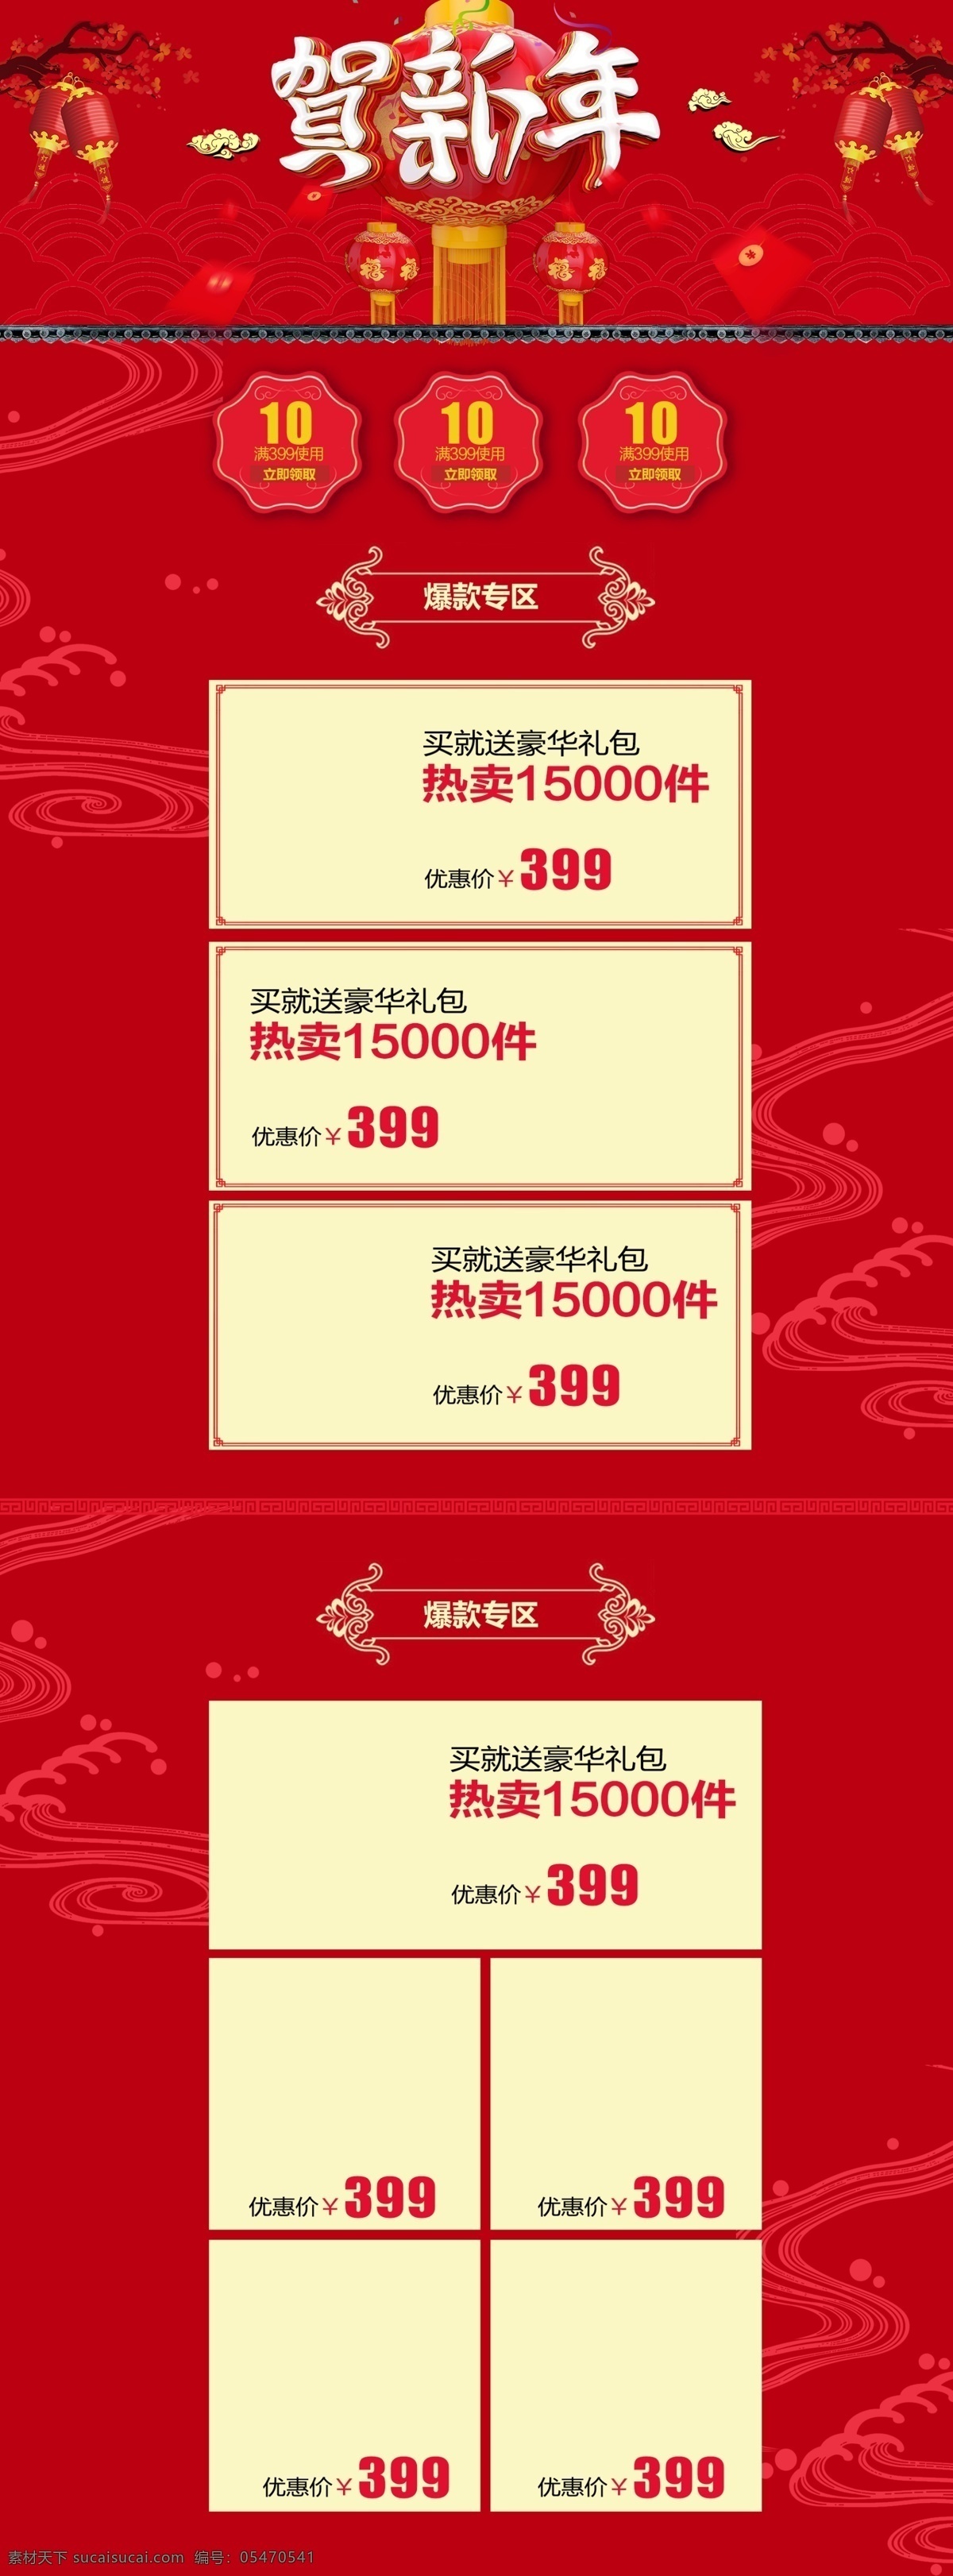 电商 淘宝 新年 大 促 红色 中 国风 家装 建材 首页 促销活动 冬季 贺新年 年货节 天猫